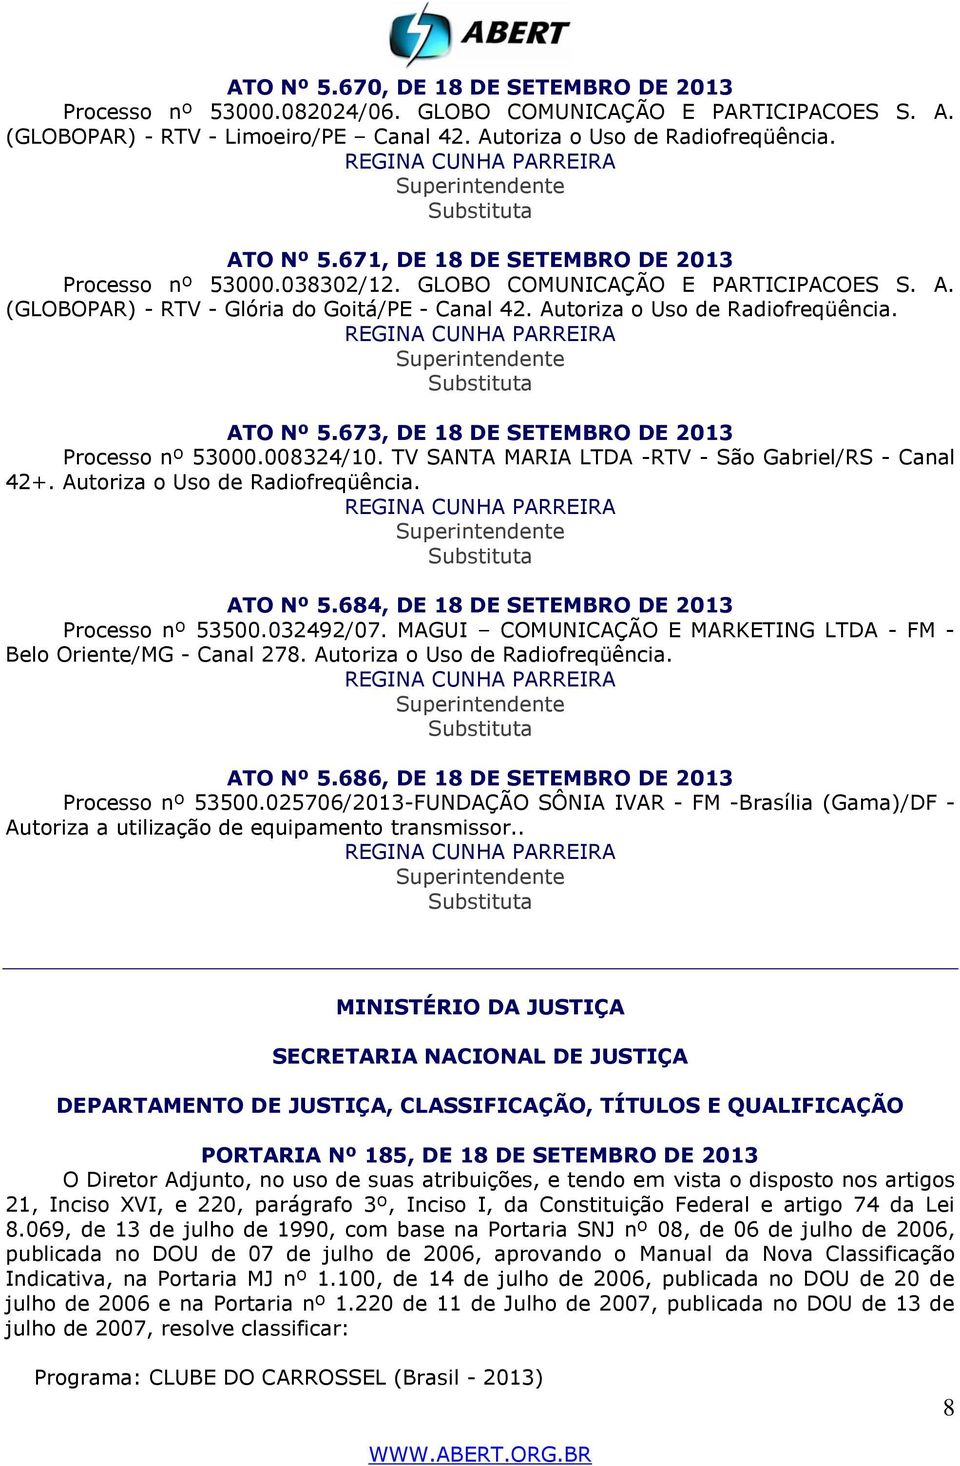 673, DE 18 DE SETEMBRO DE 2013 Processo nº 53000.008324/10. TV SANTA MARIA LTDA -RTV - São Gabriel/RS - Canal 42+. Autoriza o Uso de Radiofreqüência. ATO Nº 5.